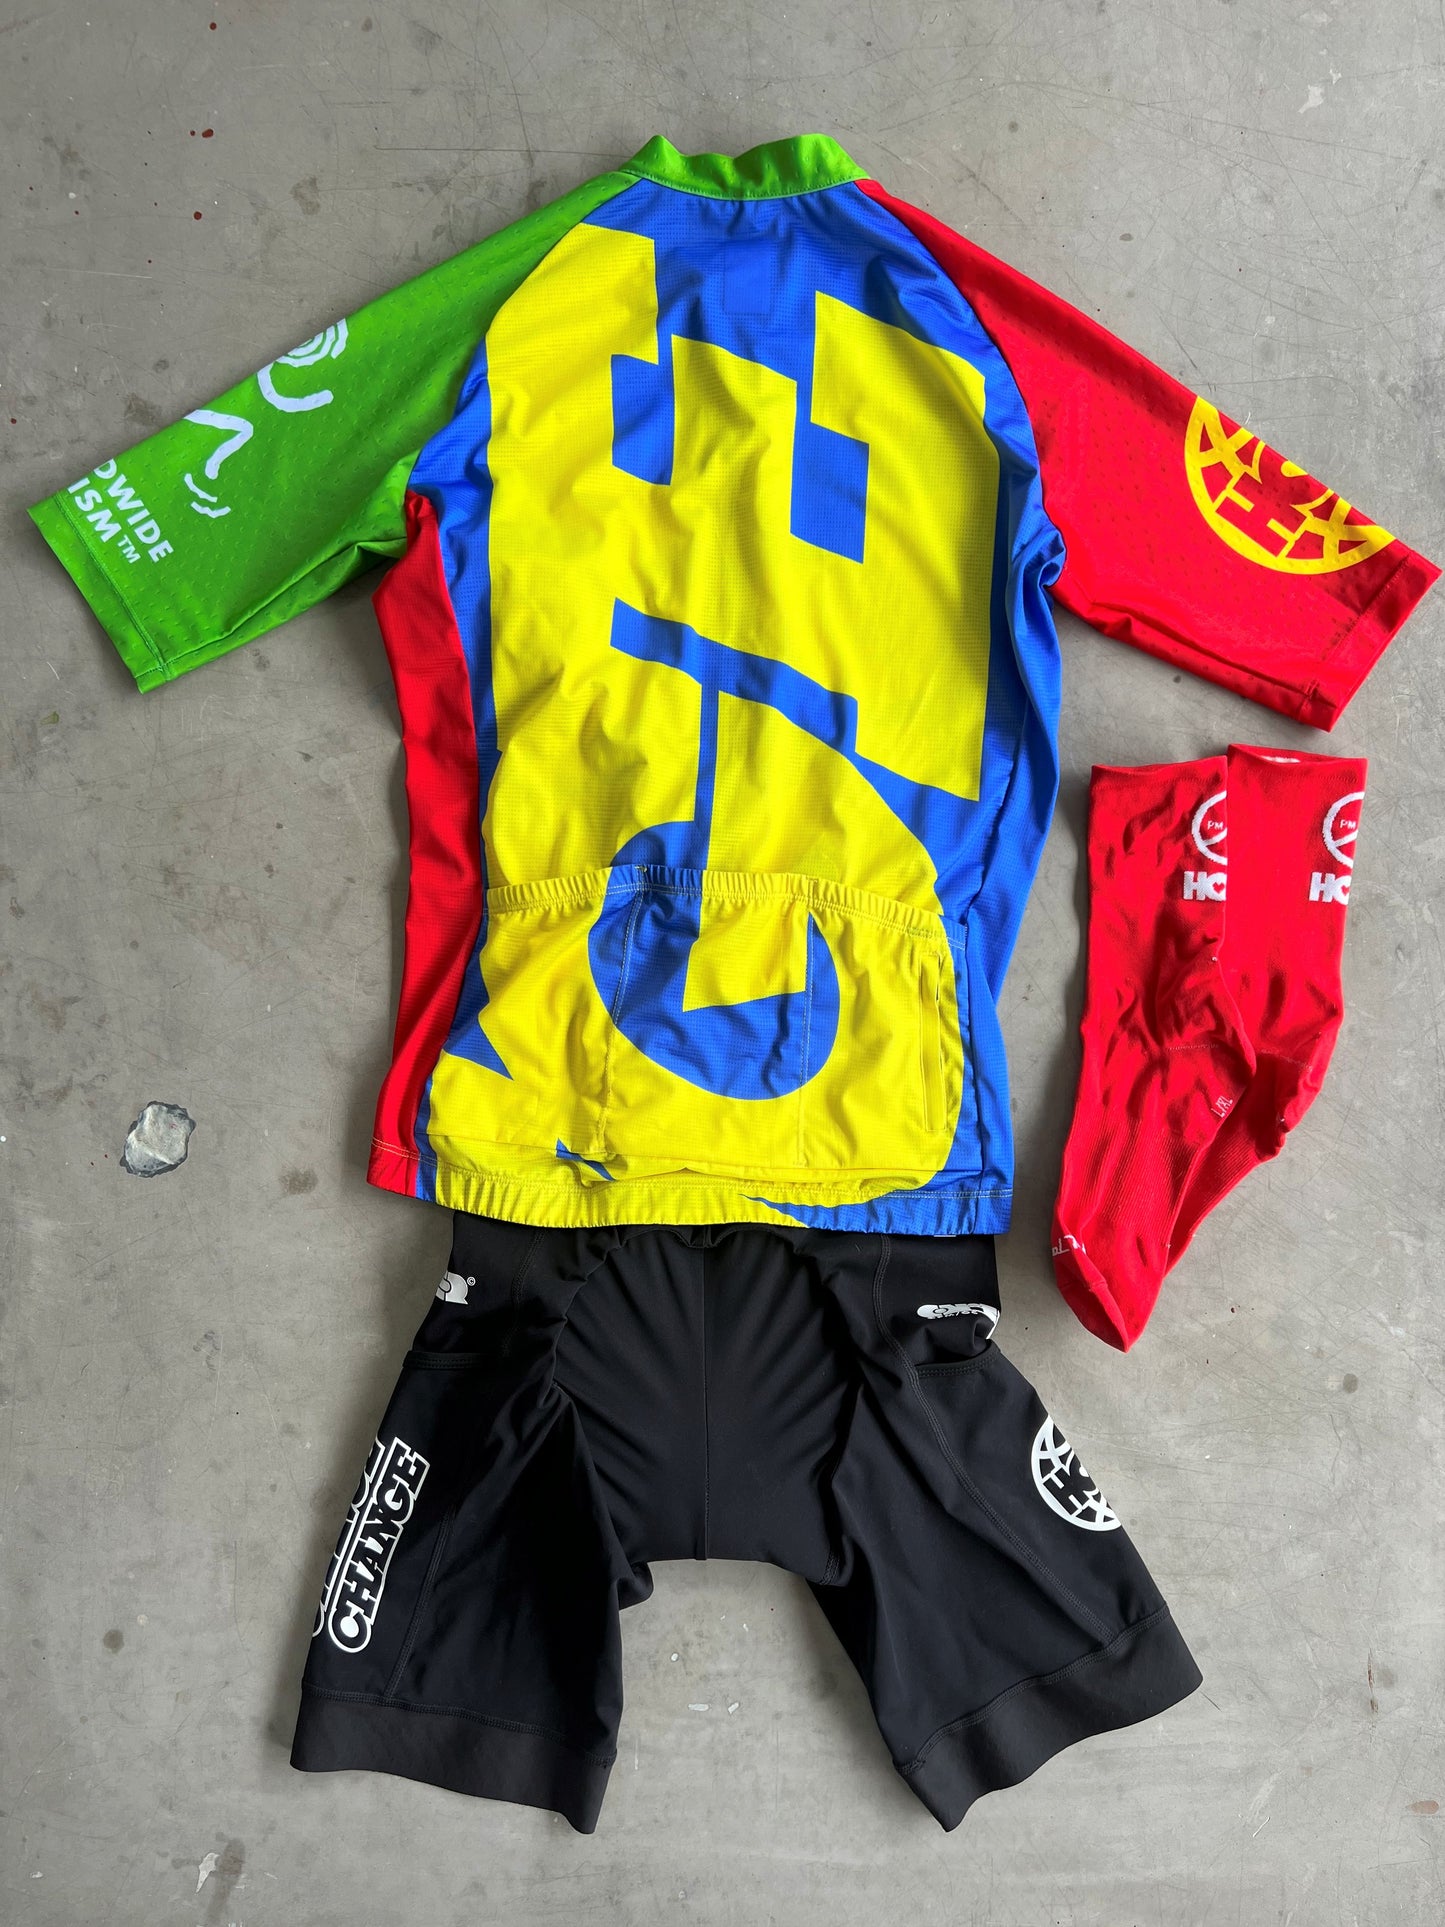 Pedal Mafia / Ornamental Conifer Collab - Jersey, Bibs & Sock Bundle | S | Rider-Issued Pro Team Kit